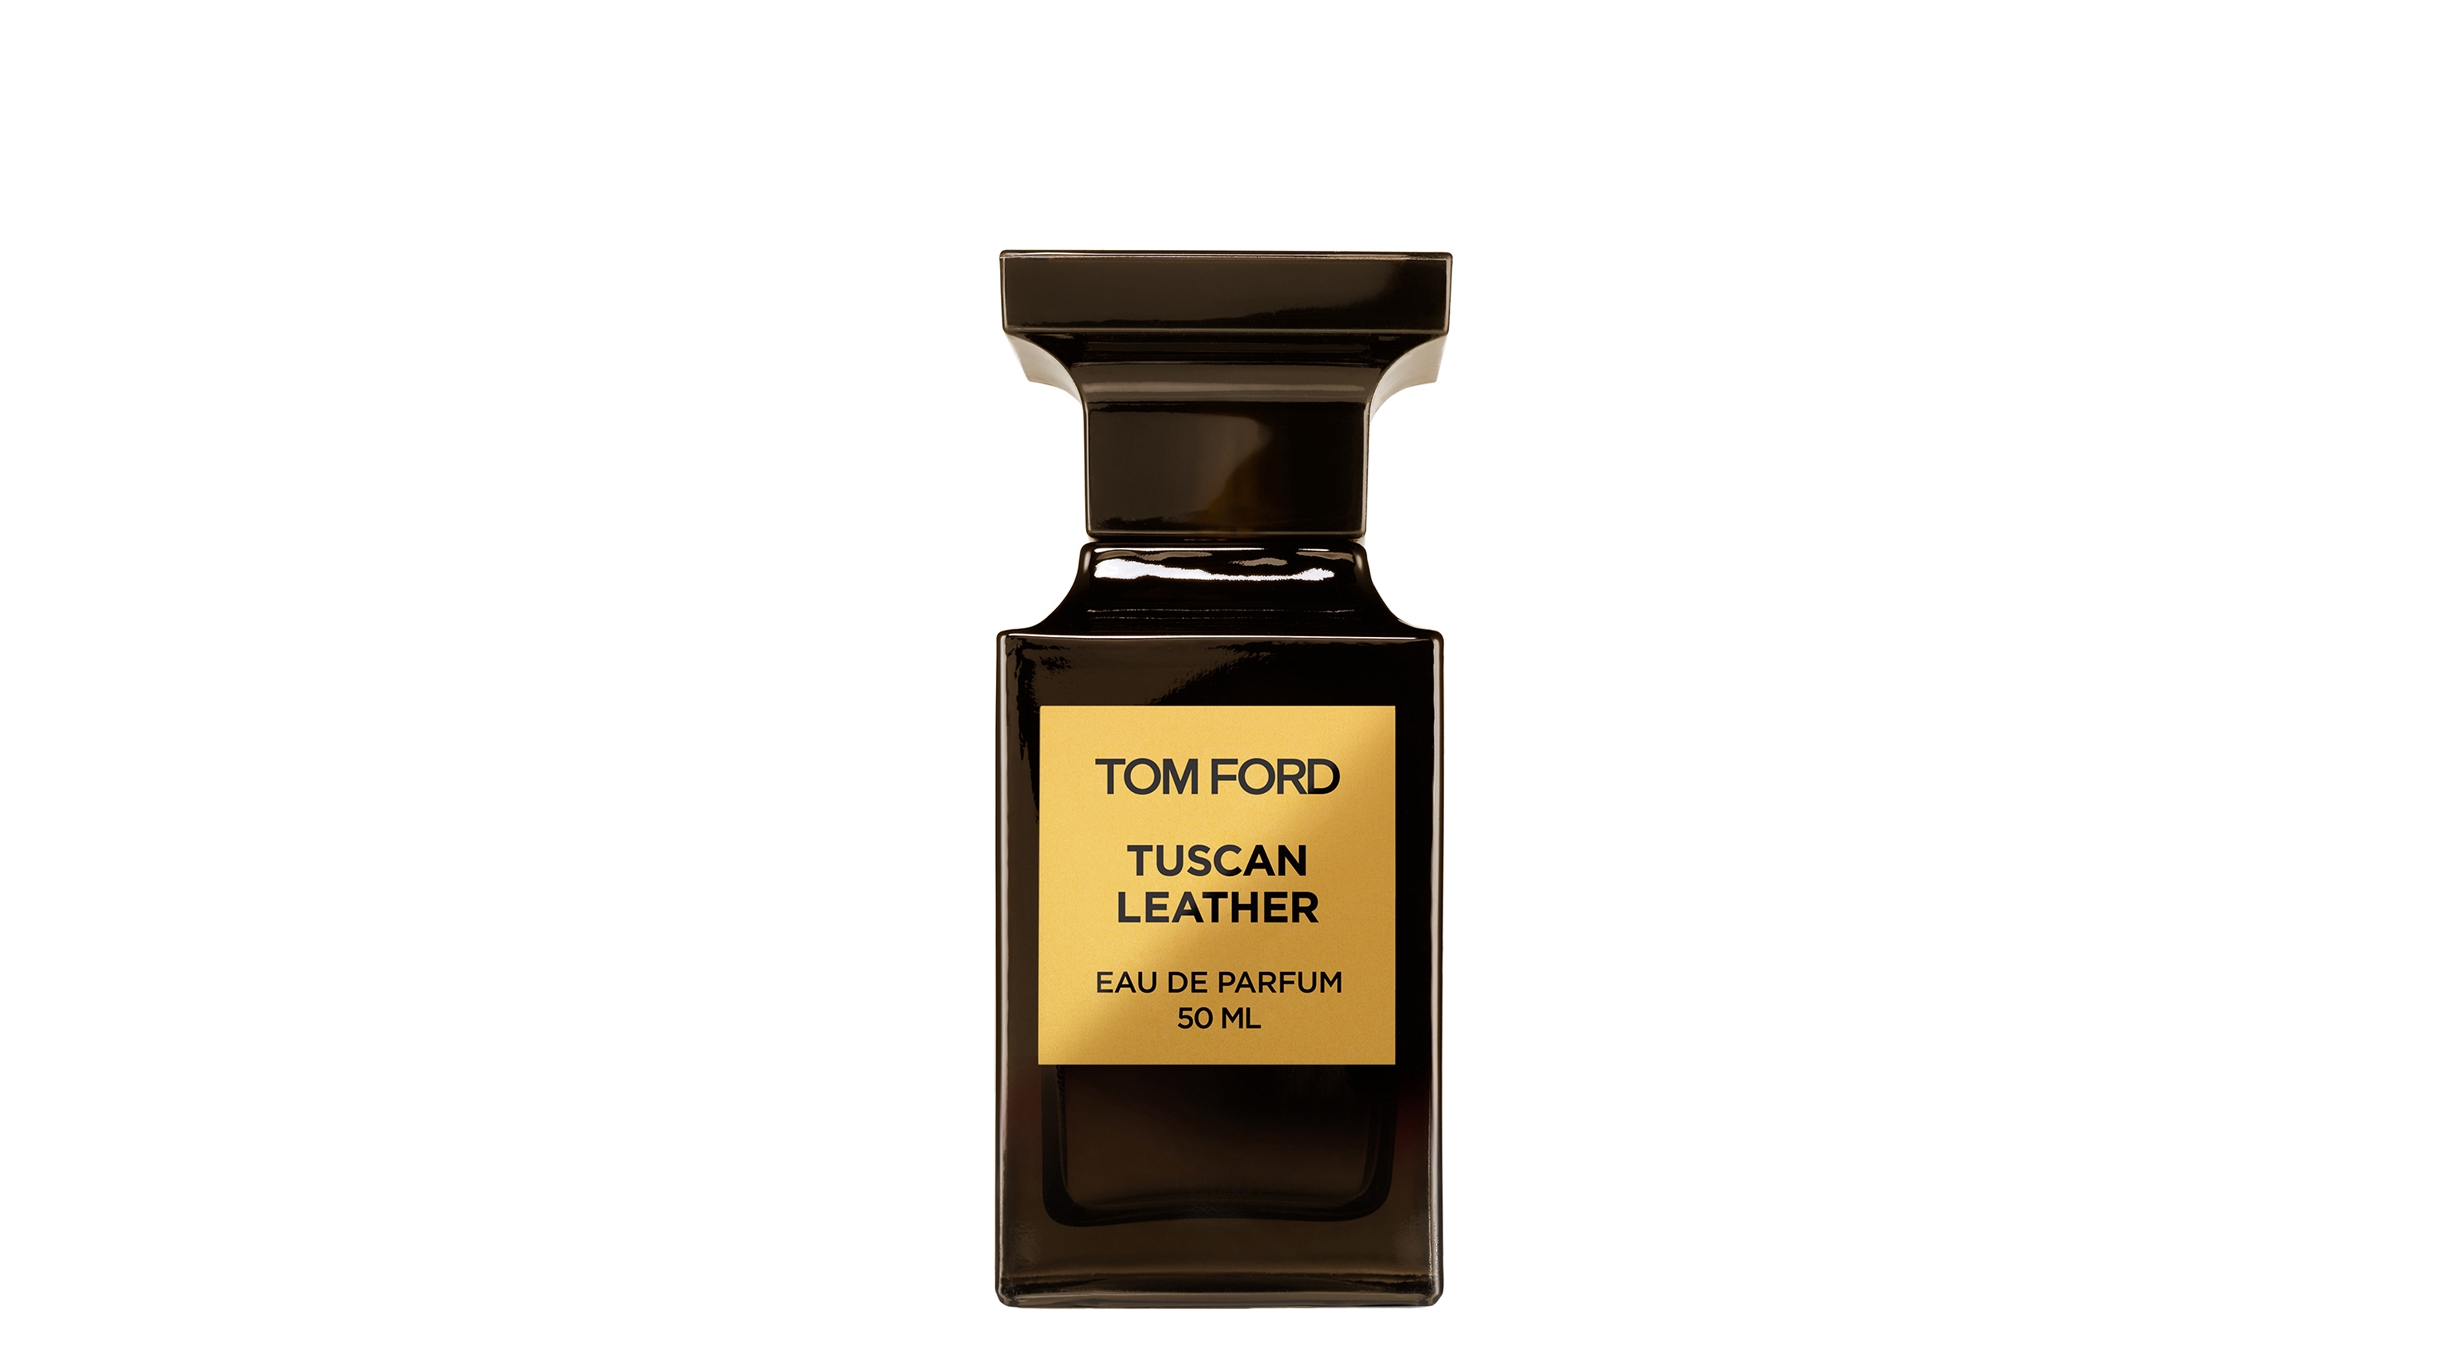 Tom Ford Private Blend Tuscan Leather Eau De Parfum 50ml - Harvey Nichols